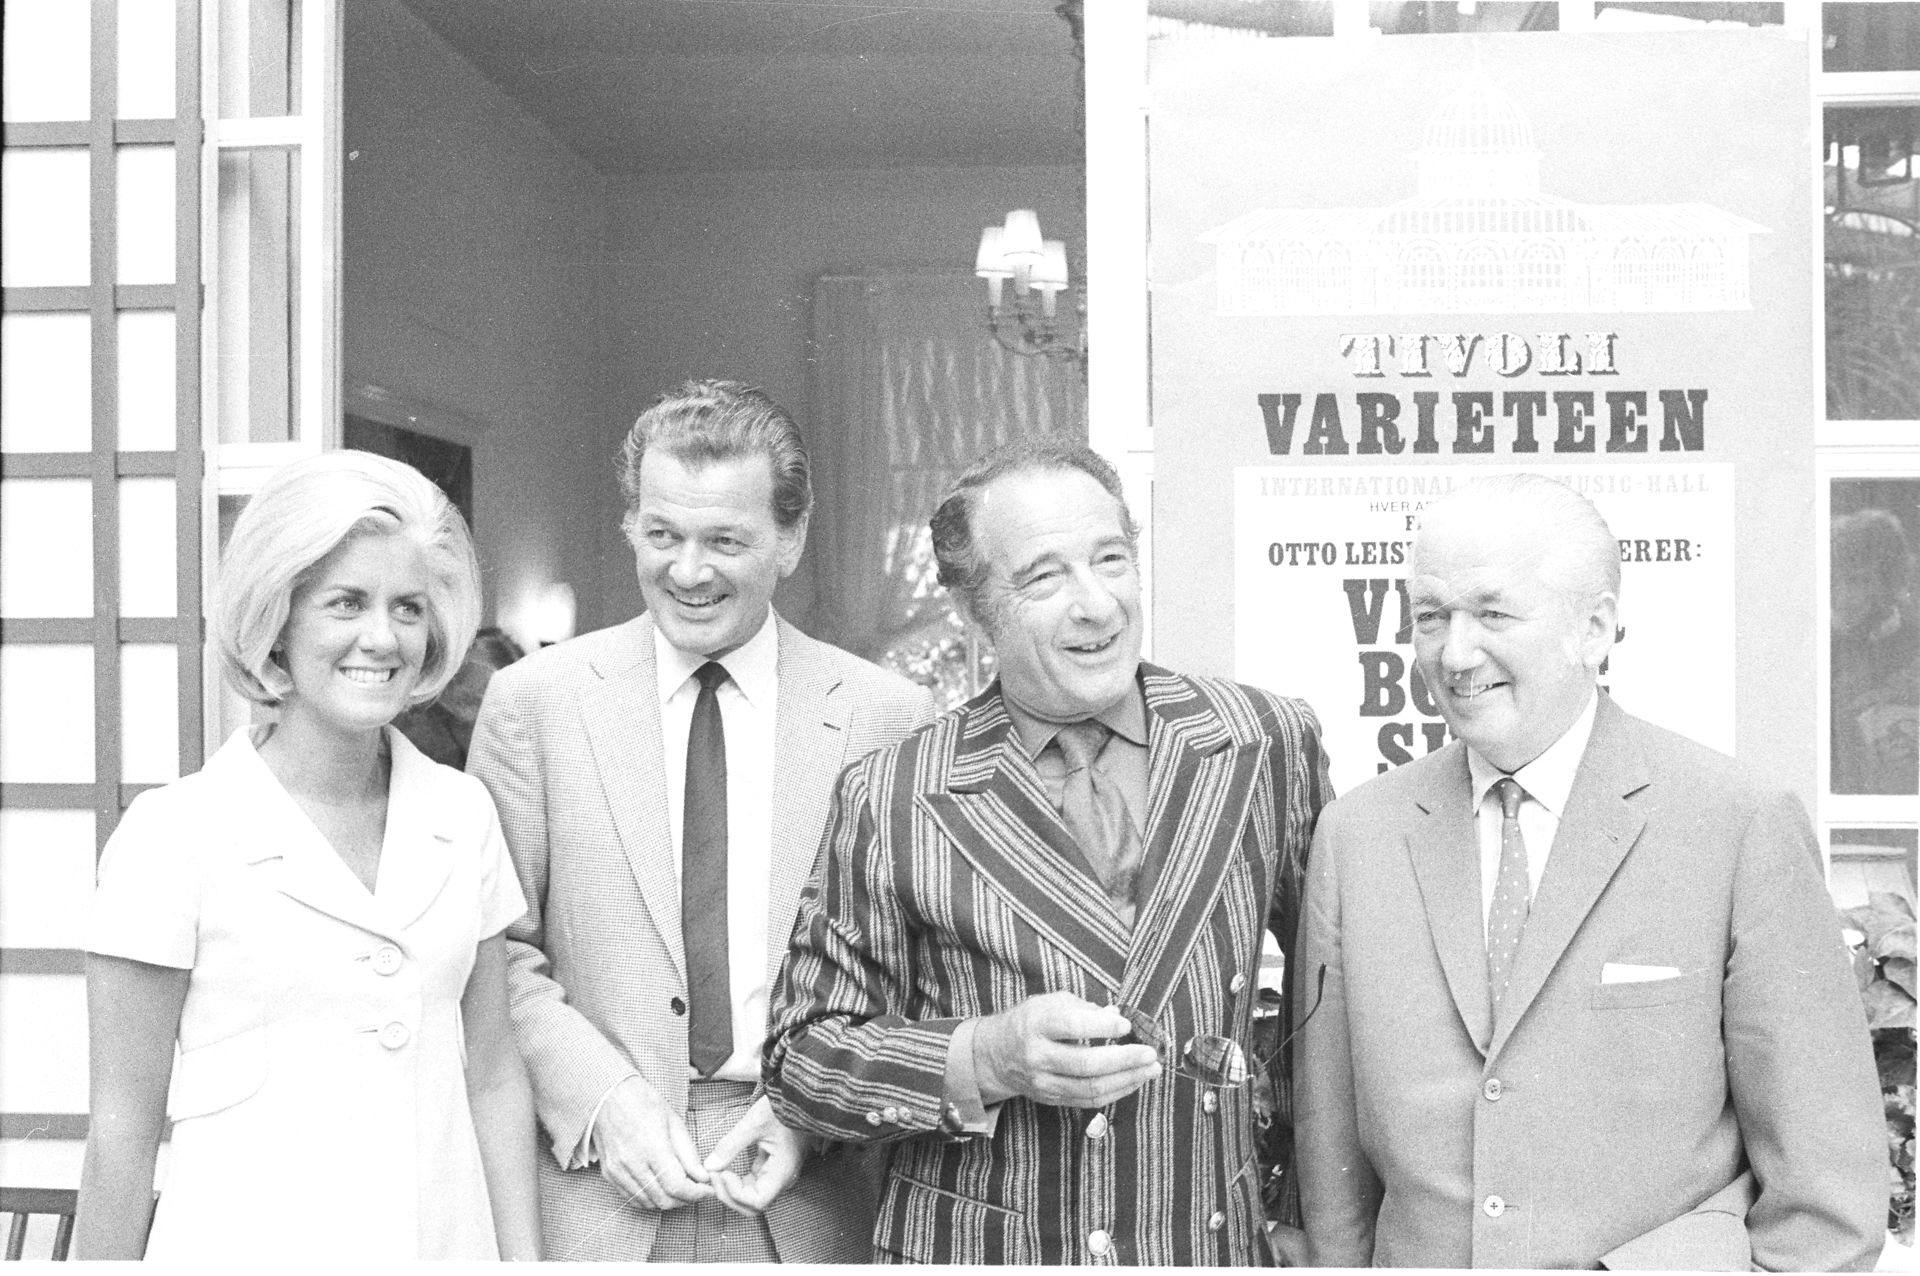 Sådan så det ud i 1970, kort før liveshowet blev lagt i mølposen. På billedet ses fra venstre: operasanger Marilyn Molvey, programvært i Danmarks Radio Otto Leisner, entertainer Victor Borge og orkersterleder Otto Lington.
